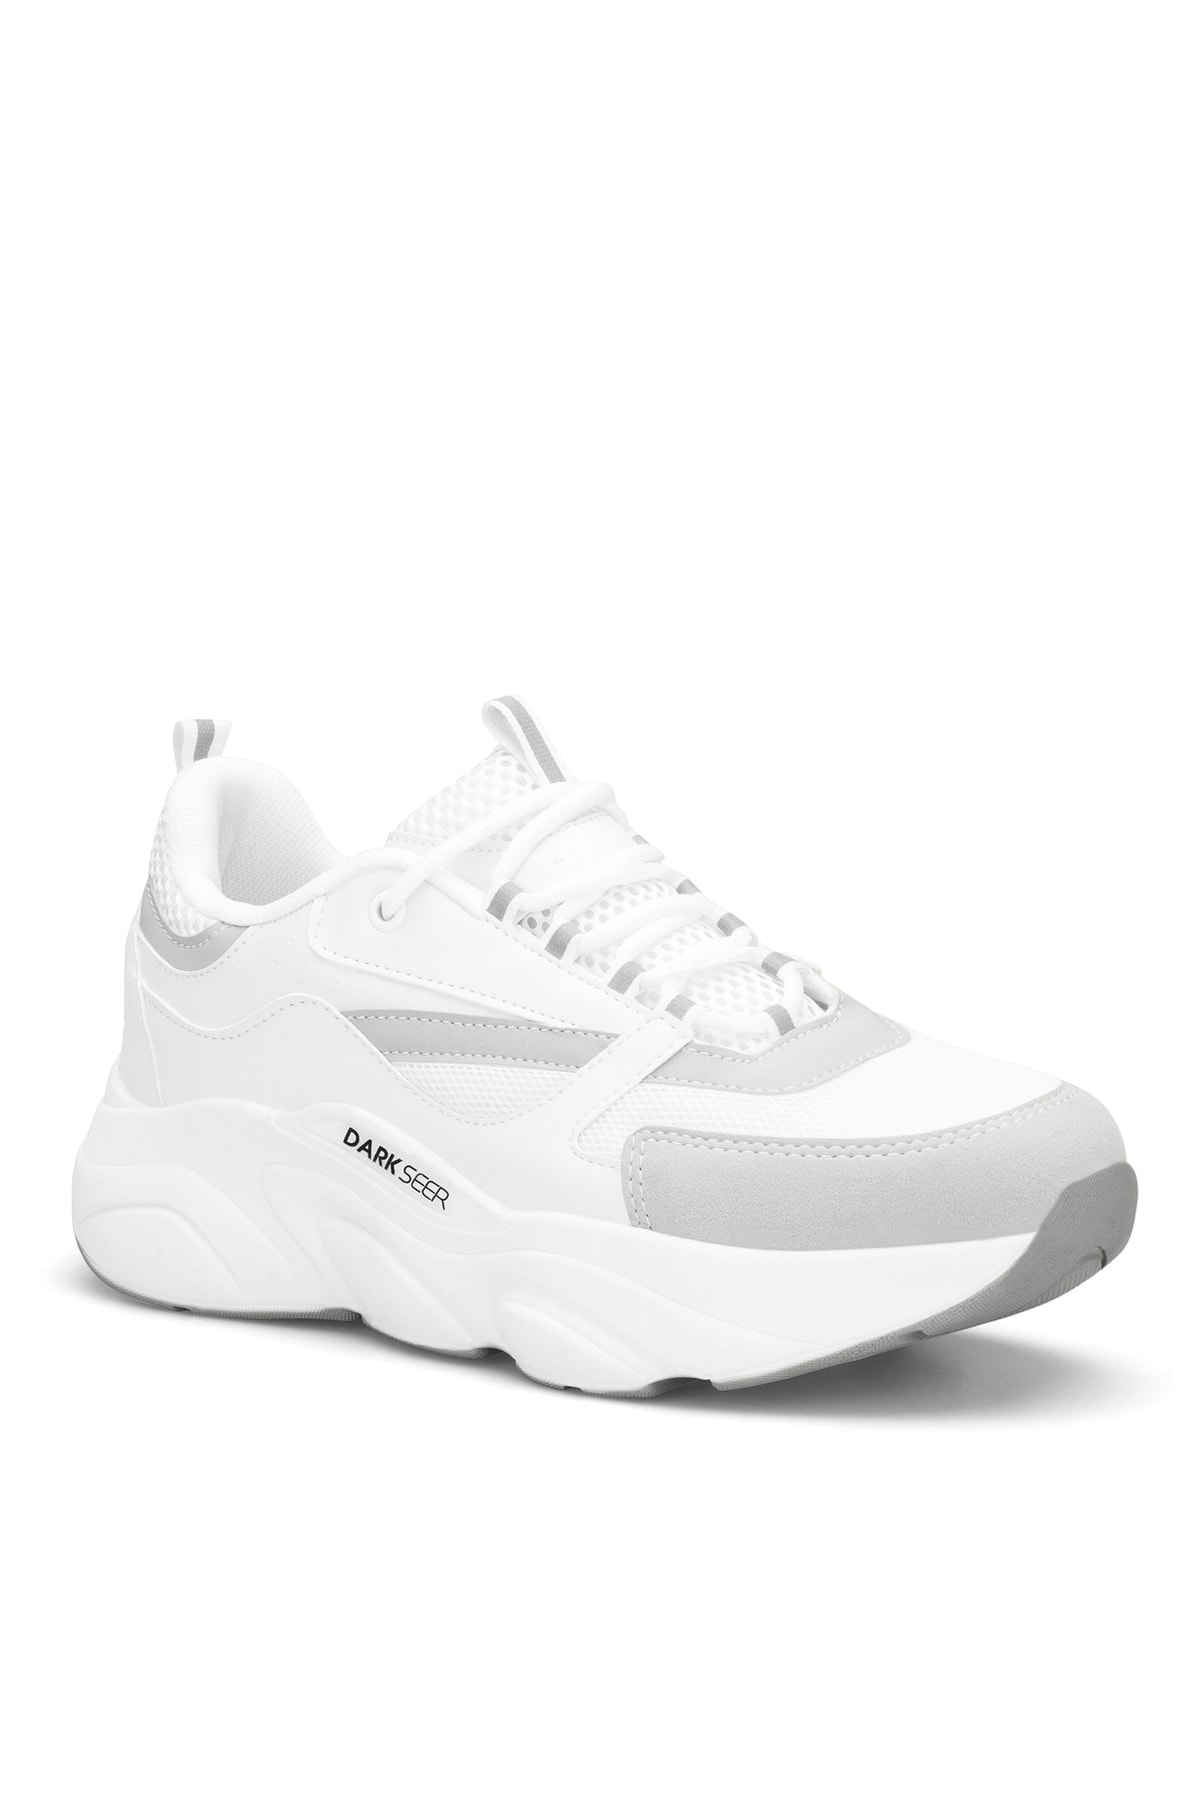 DARK SEER White Unisex Sneakers